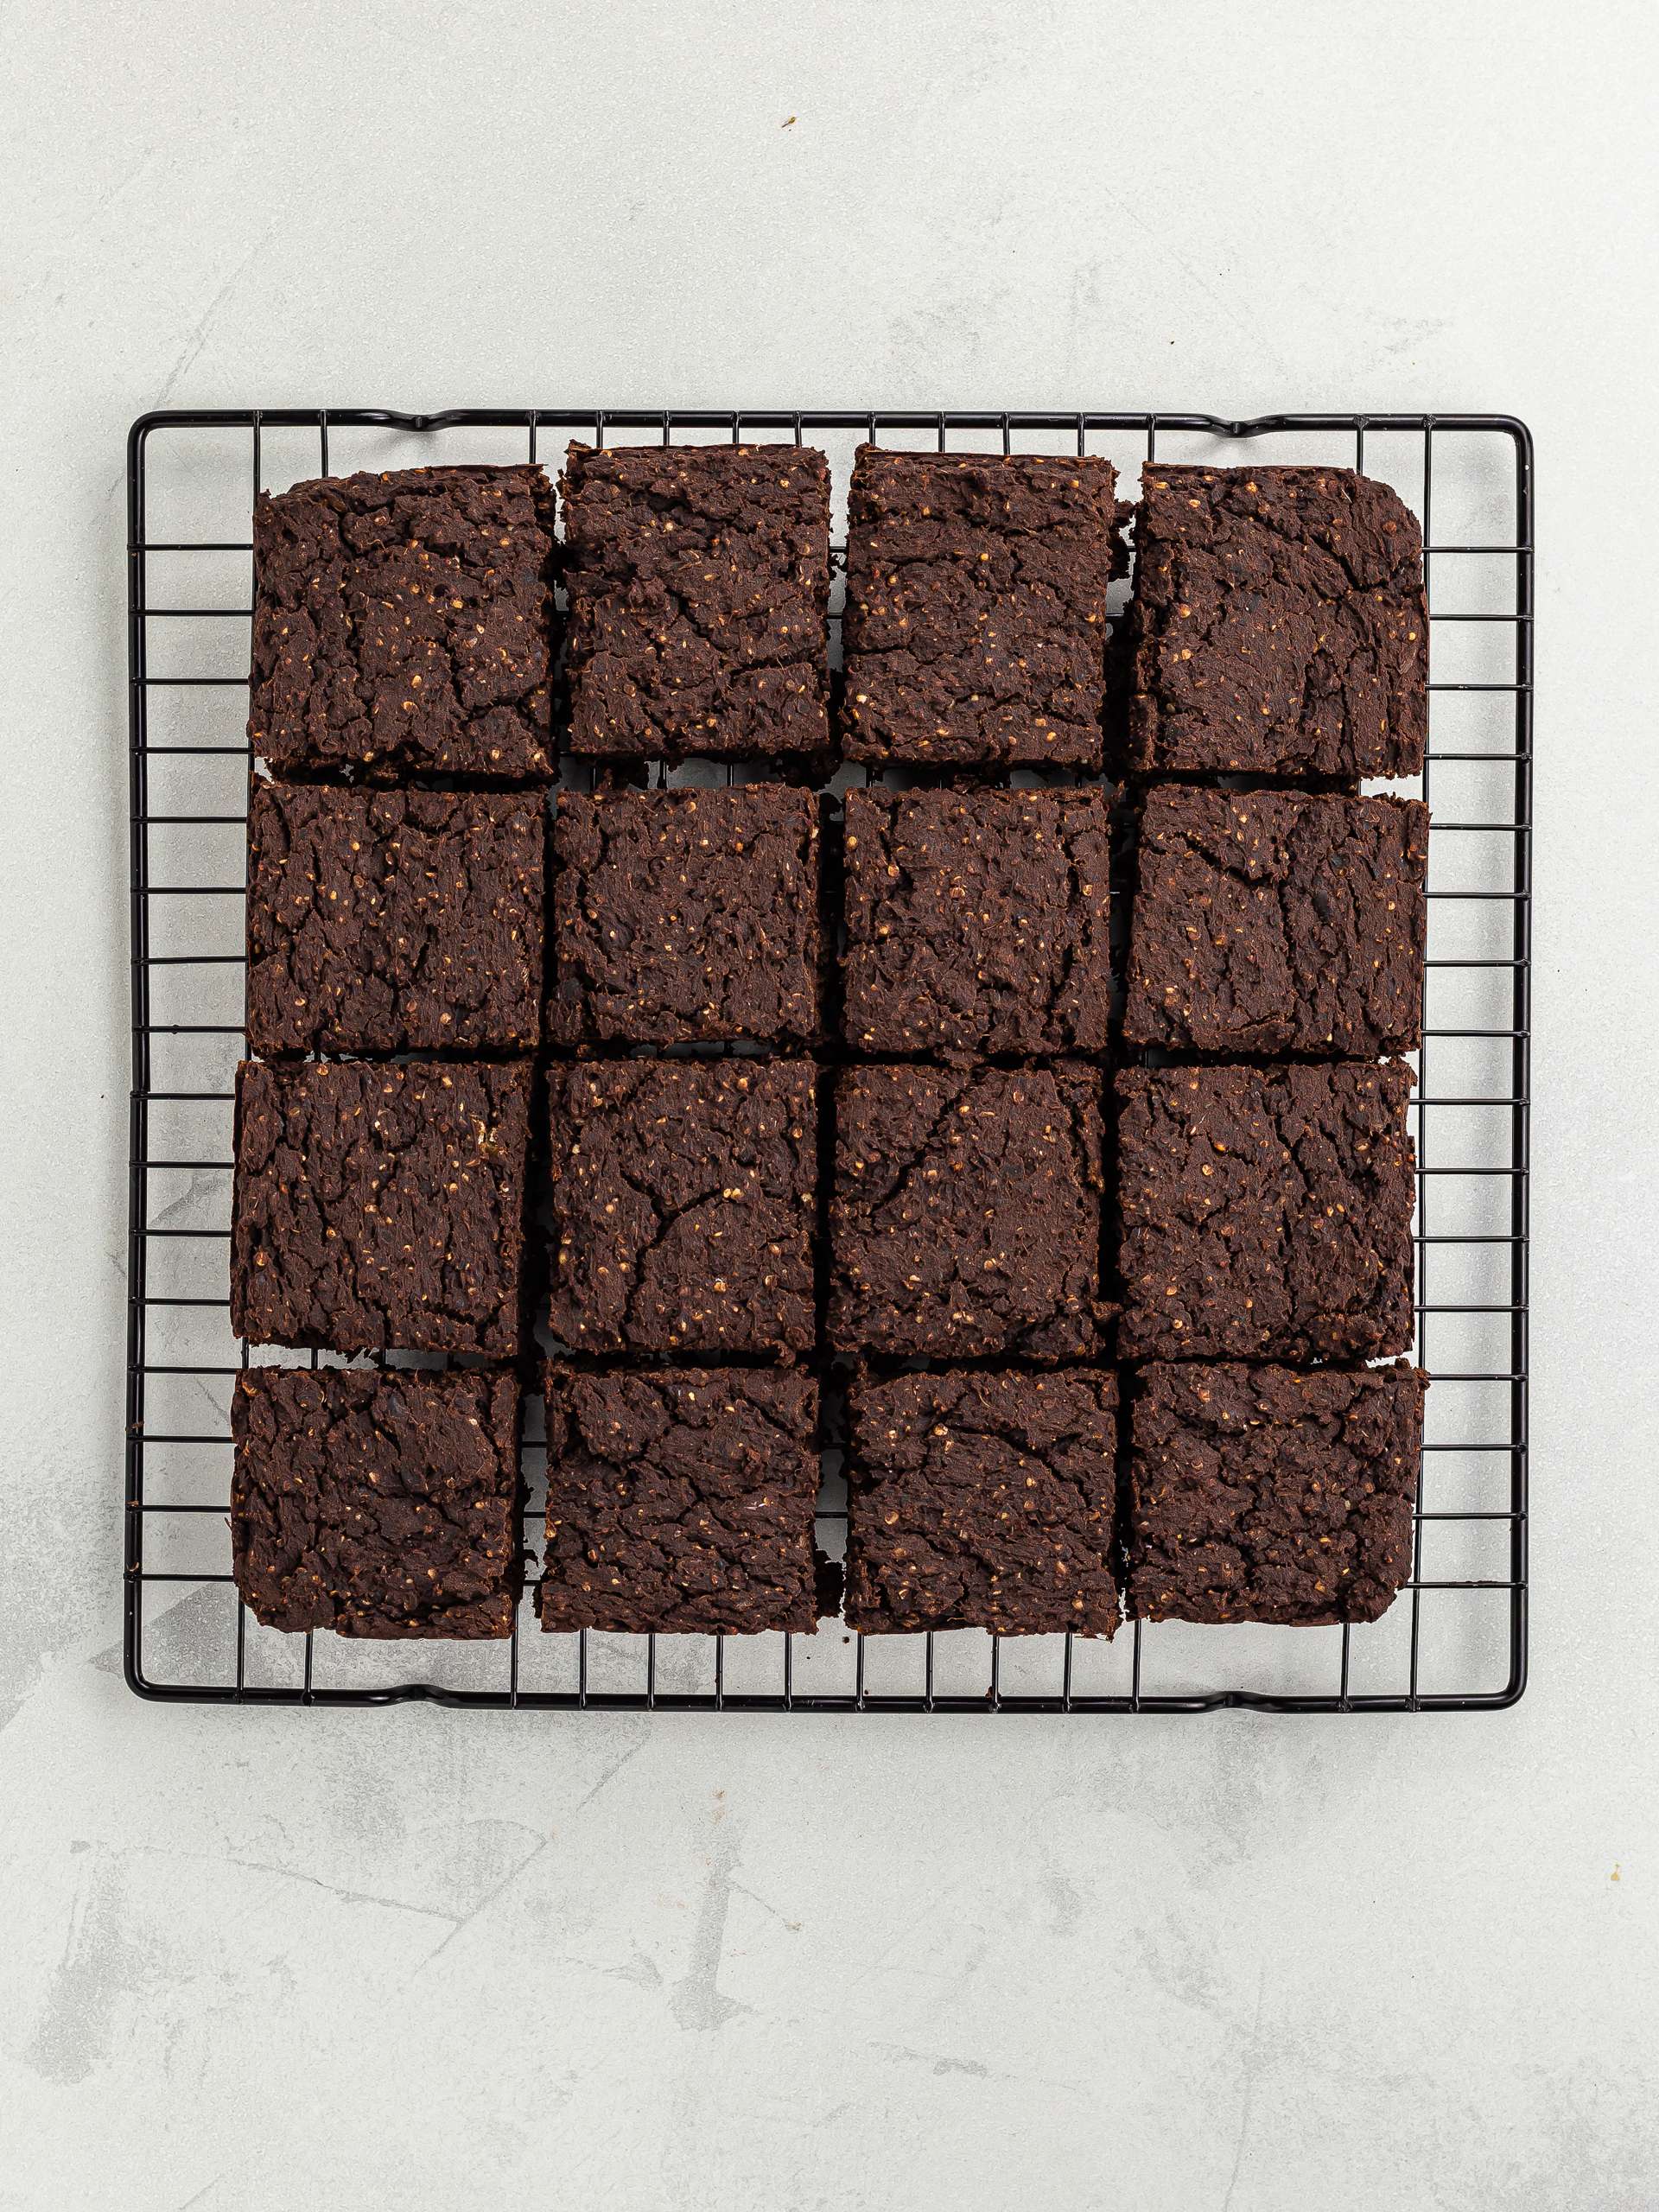 baked hemp brownies squares